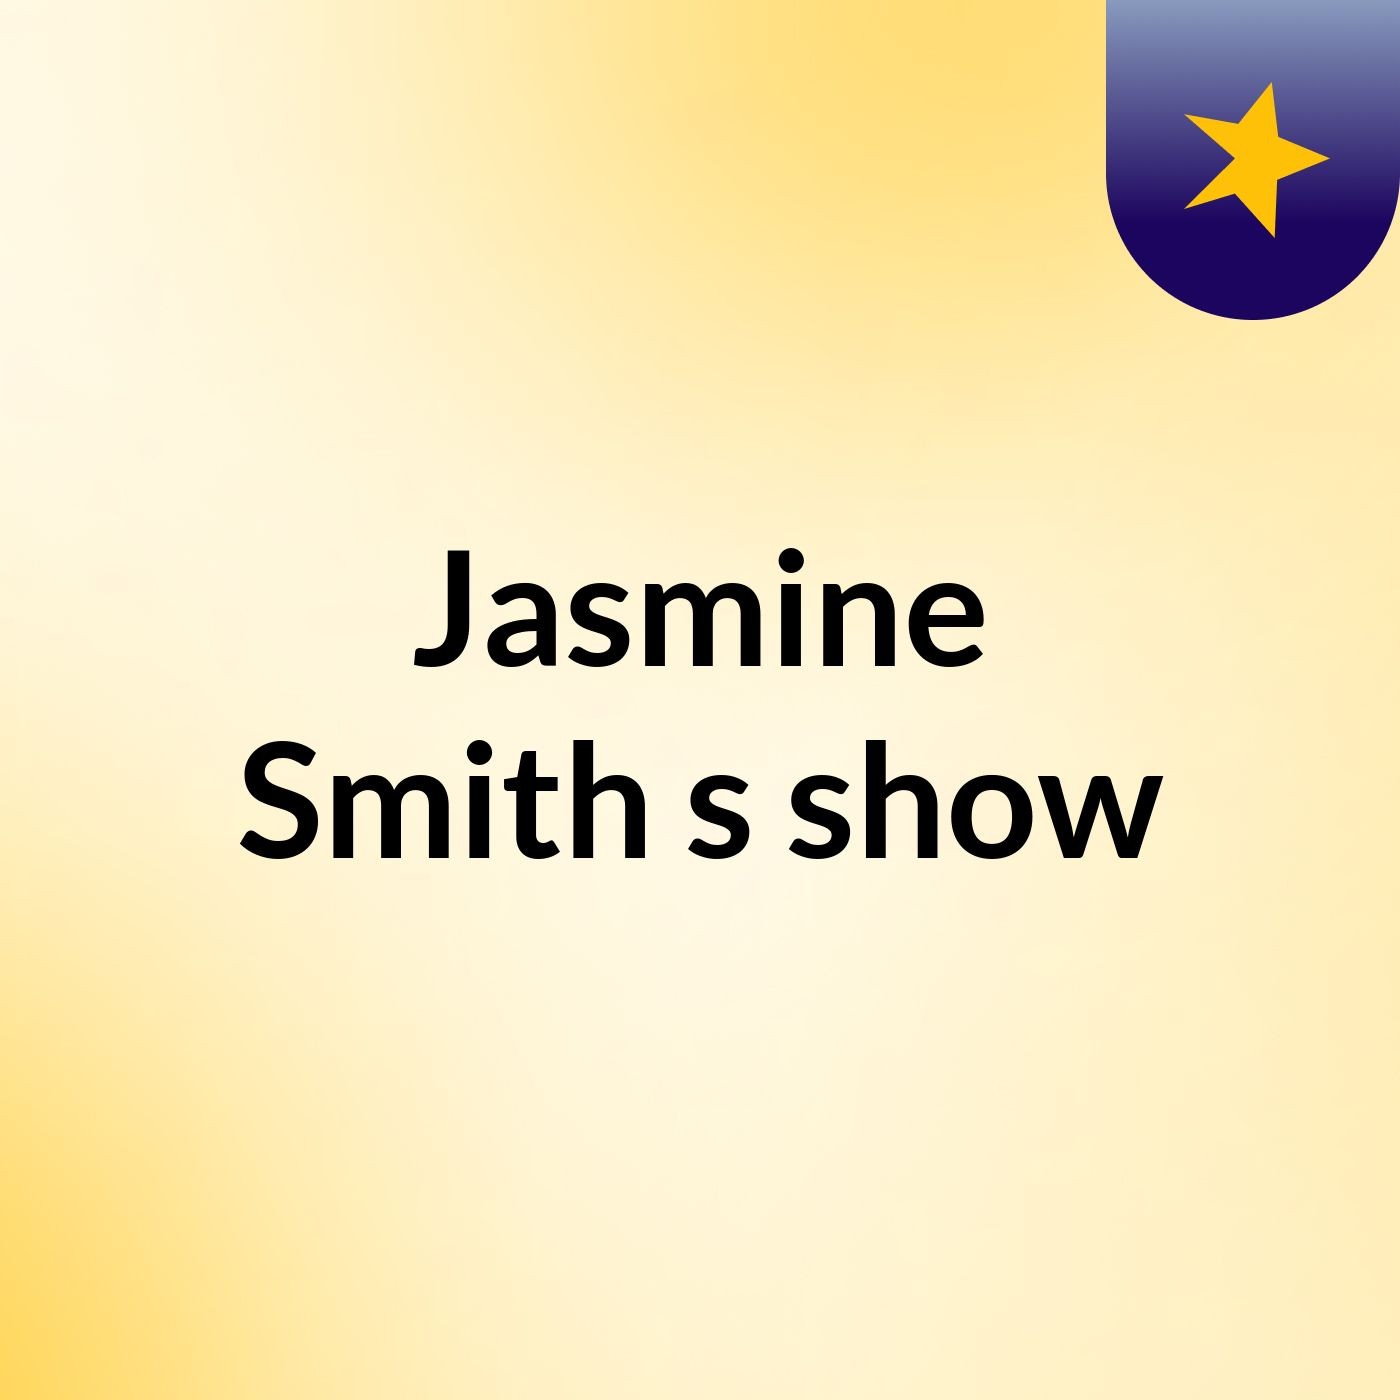 Jasmine Smith's show